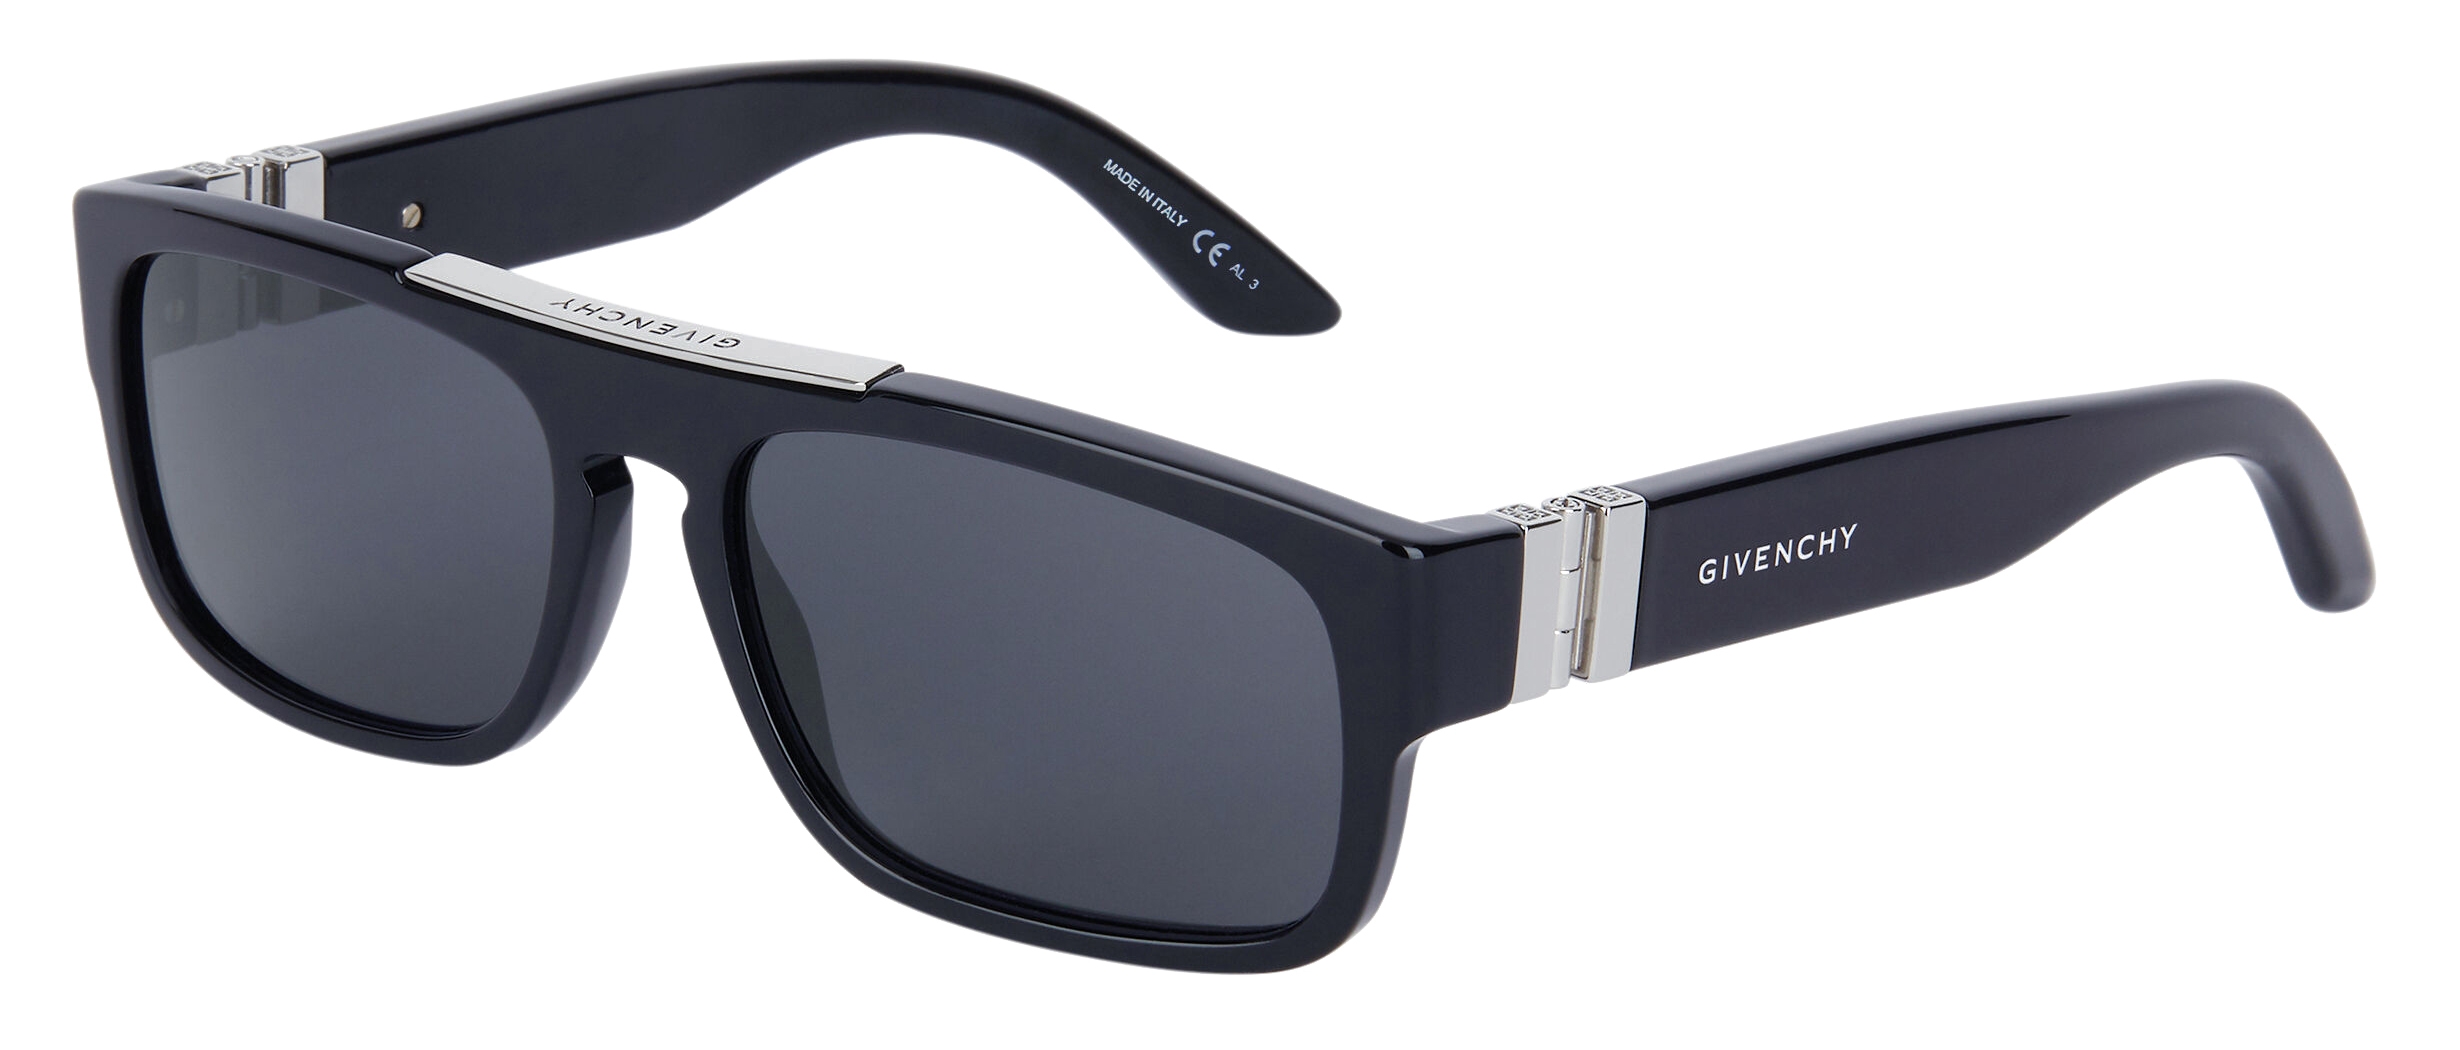 Givenchy - GV Hinge Unisex Sunglasses in Acetate - Black 